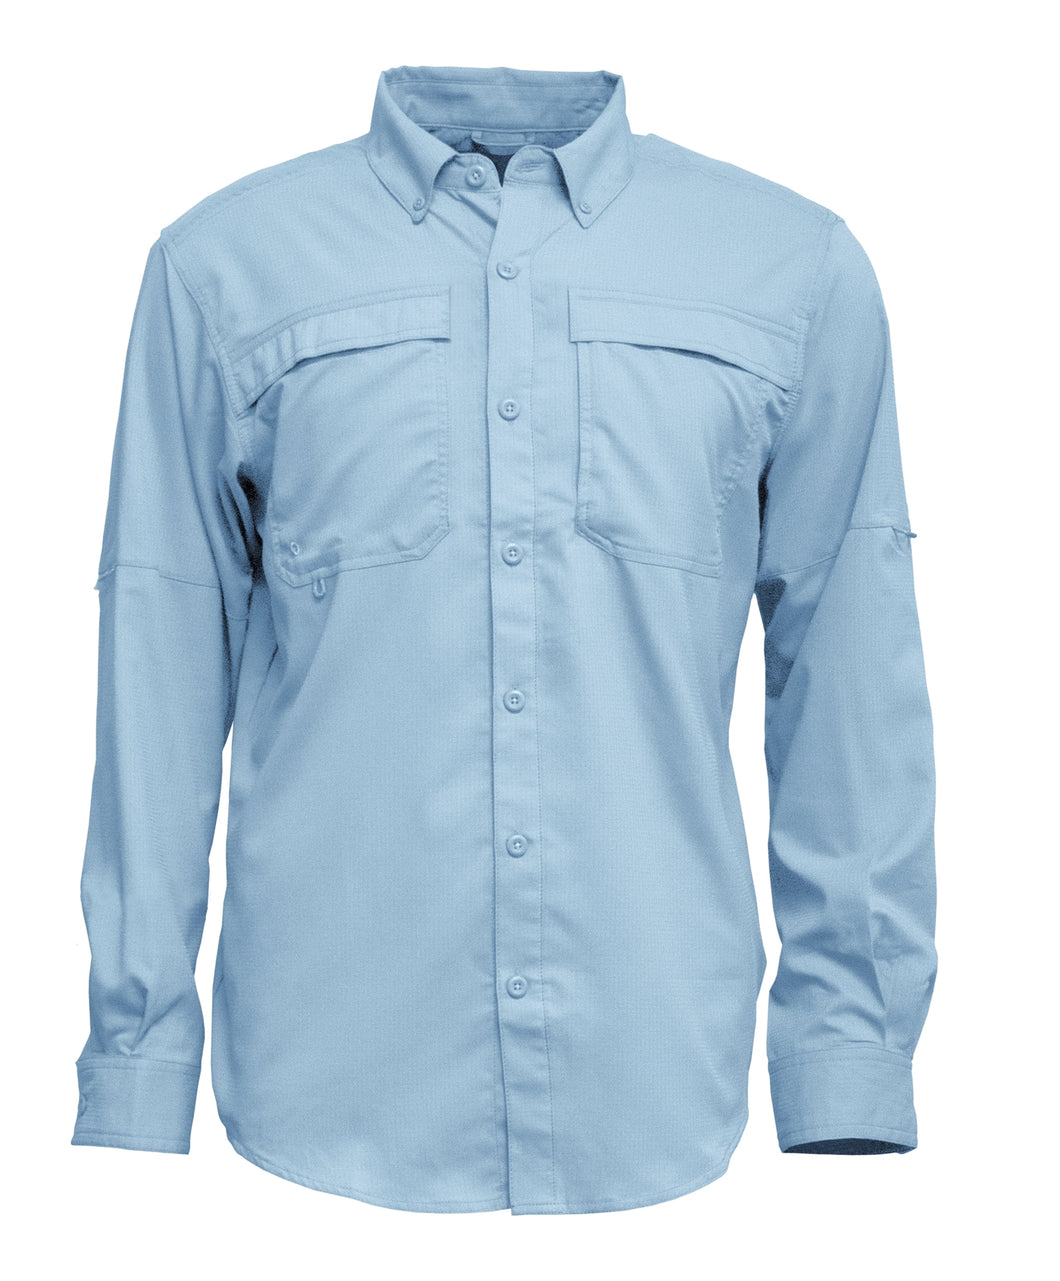 Men's Long Sleeve SoWal Beach Button Up Shirt